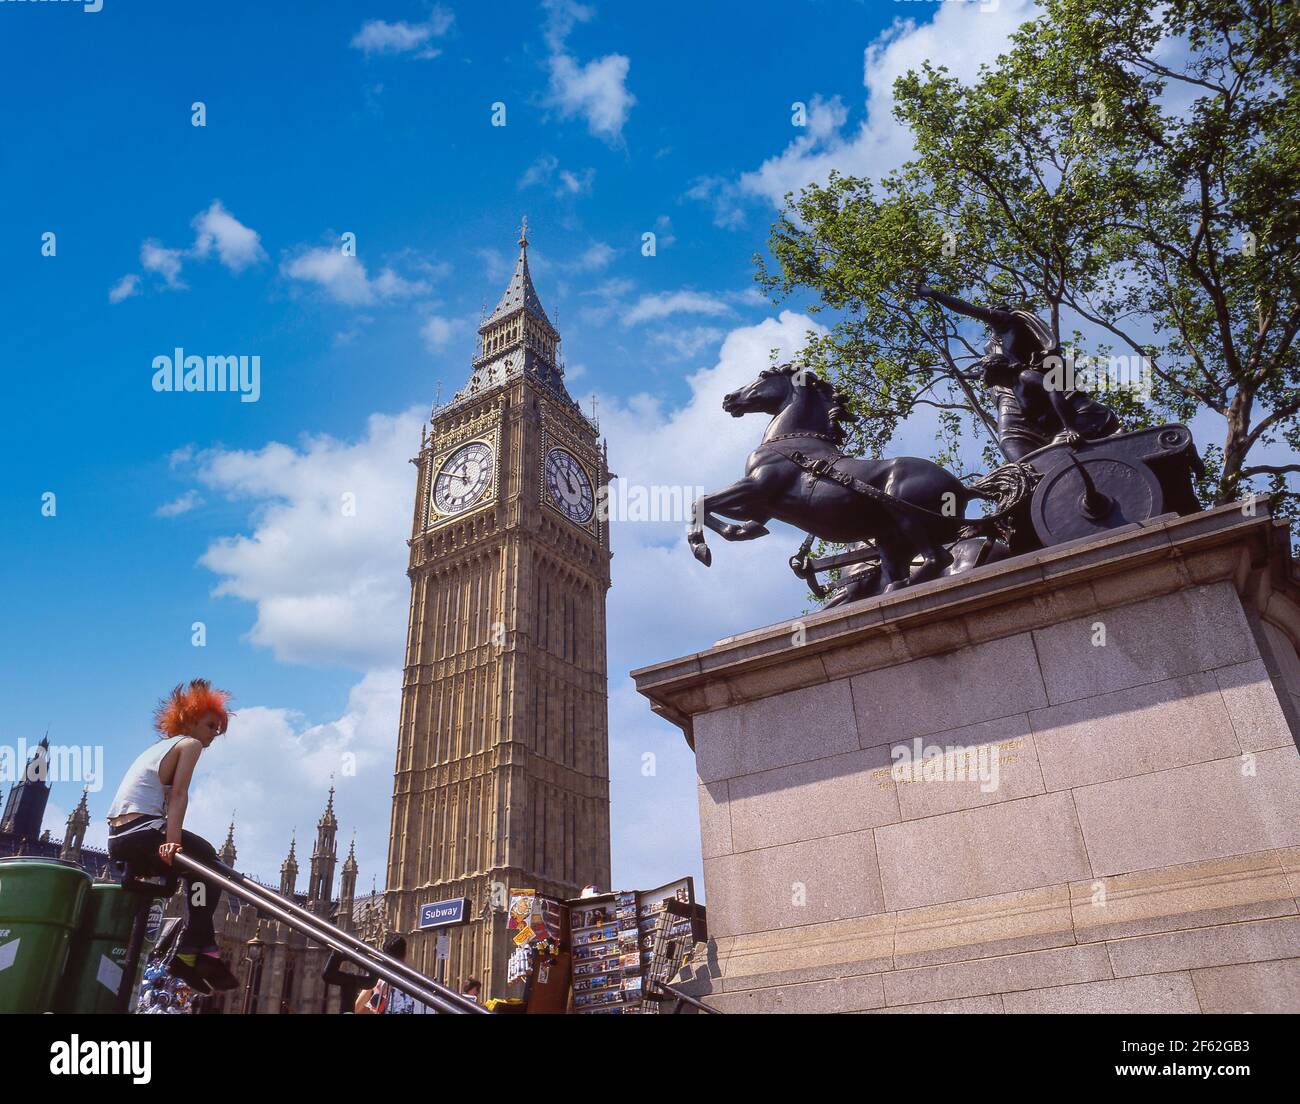 Big Ben tour de l'horloge et Statue de Boudicca Westminster Bridge, City of westminster, Greater London, Angleterre, Royaume-Uni Banque D'Images